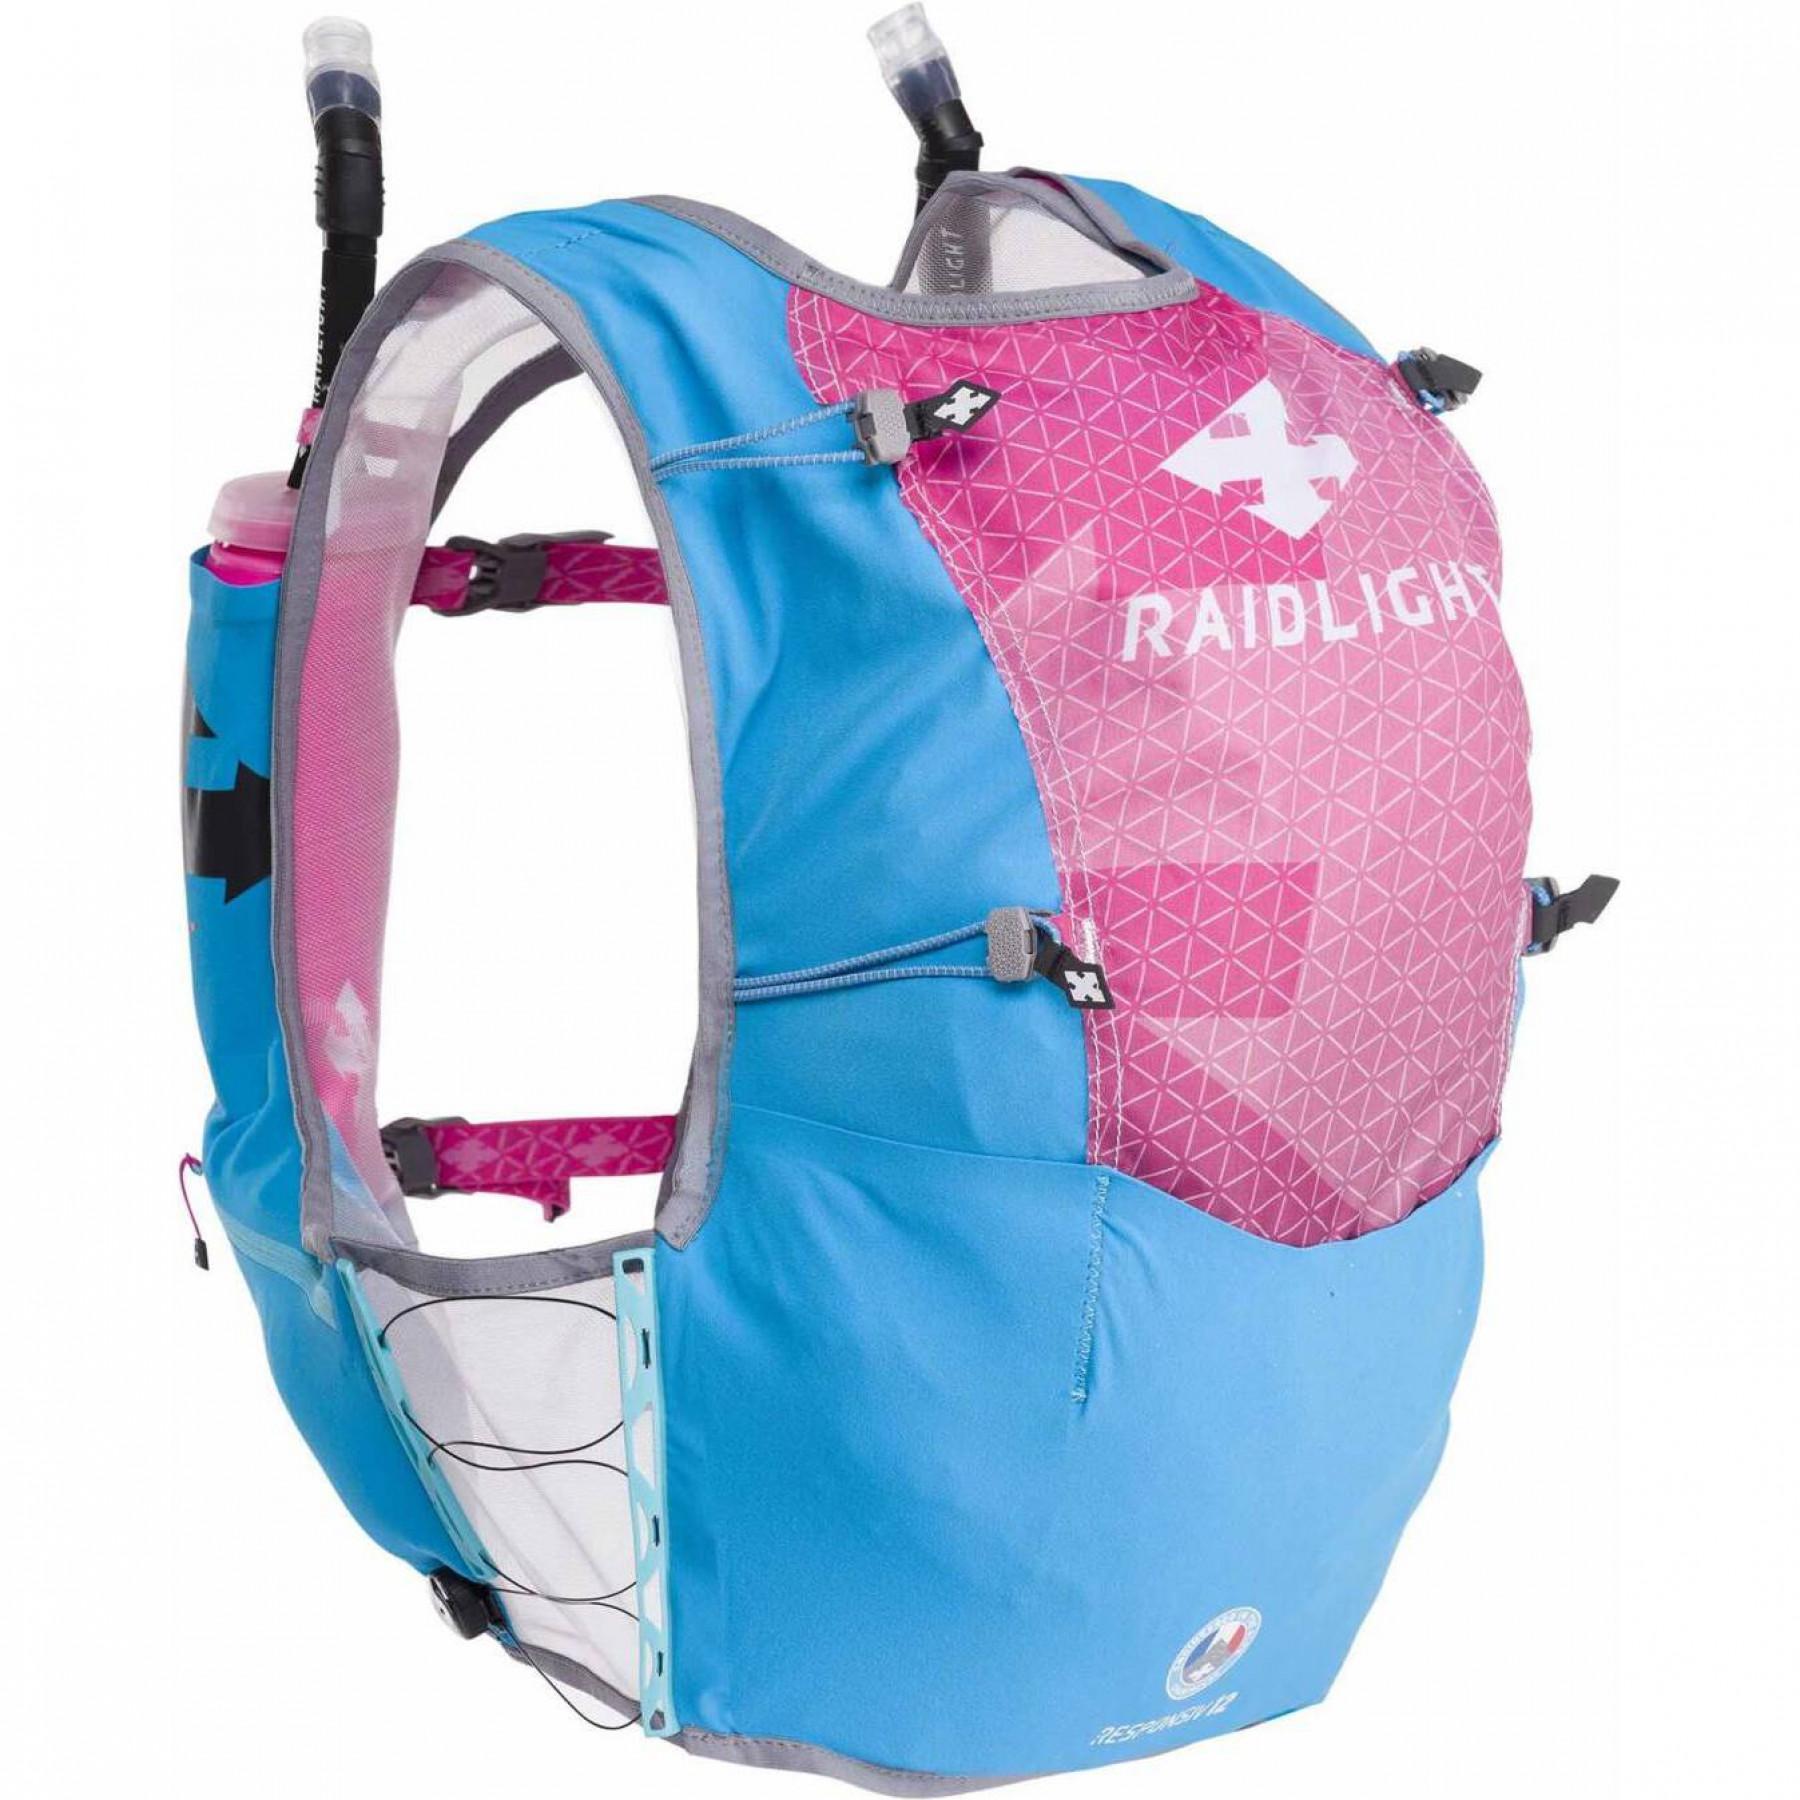 Ryggsäck för kvinnor RaidLight responsiv vest 12l